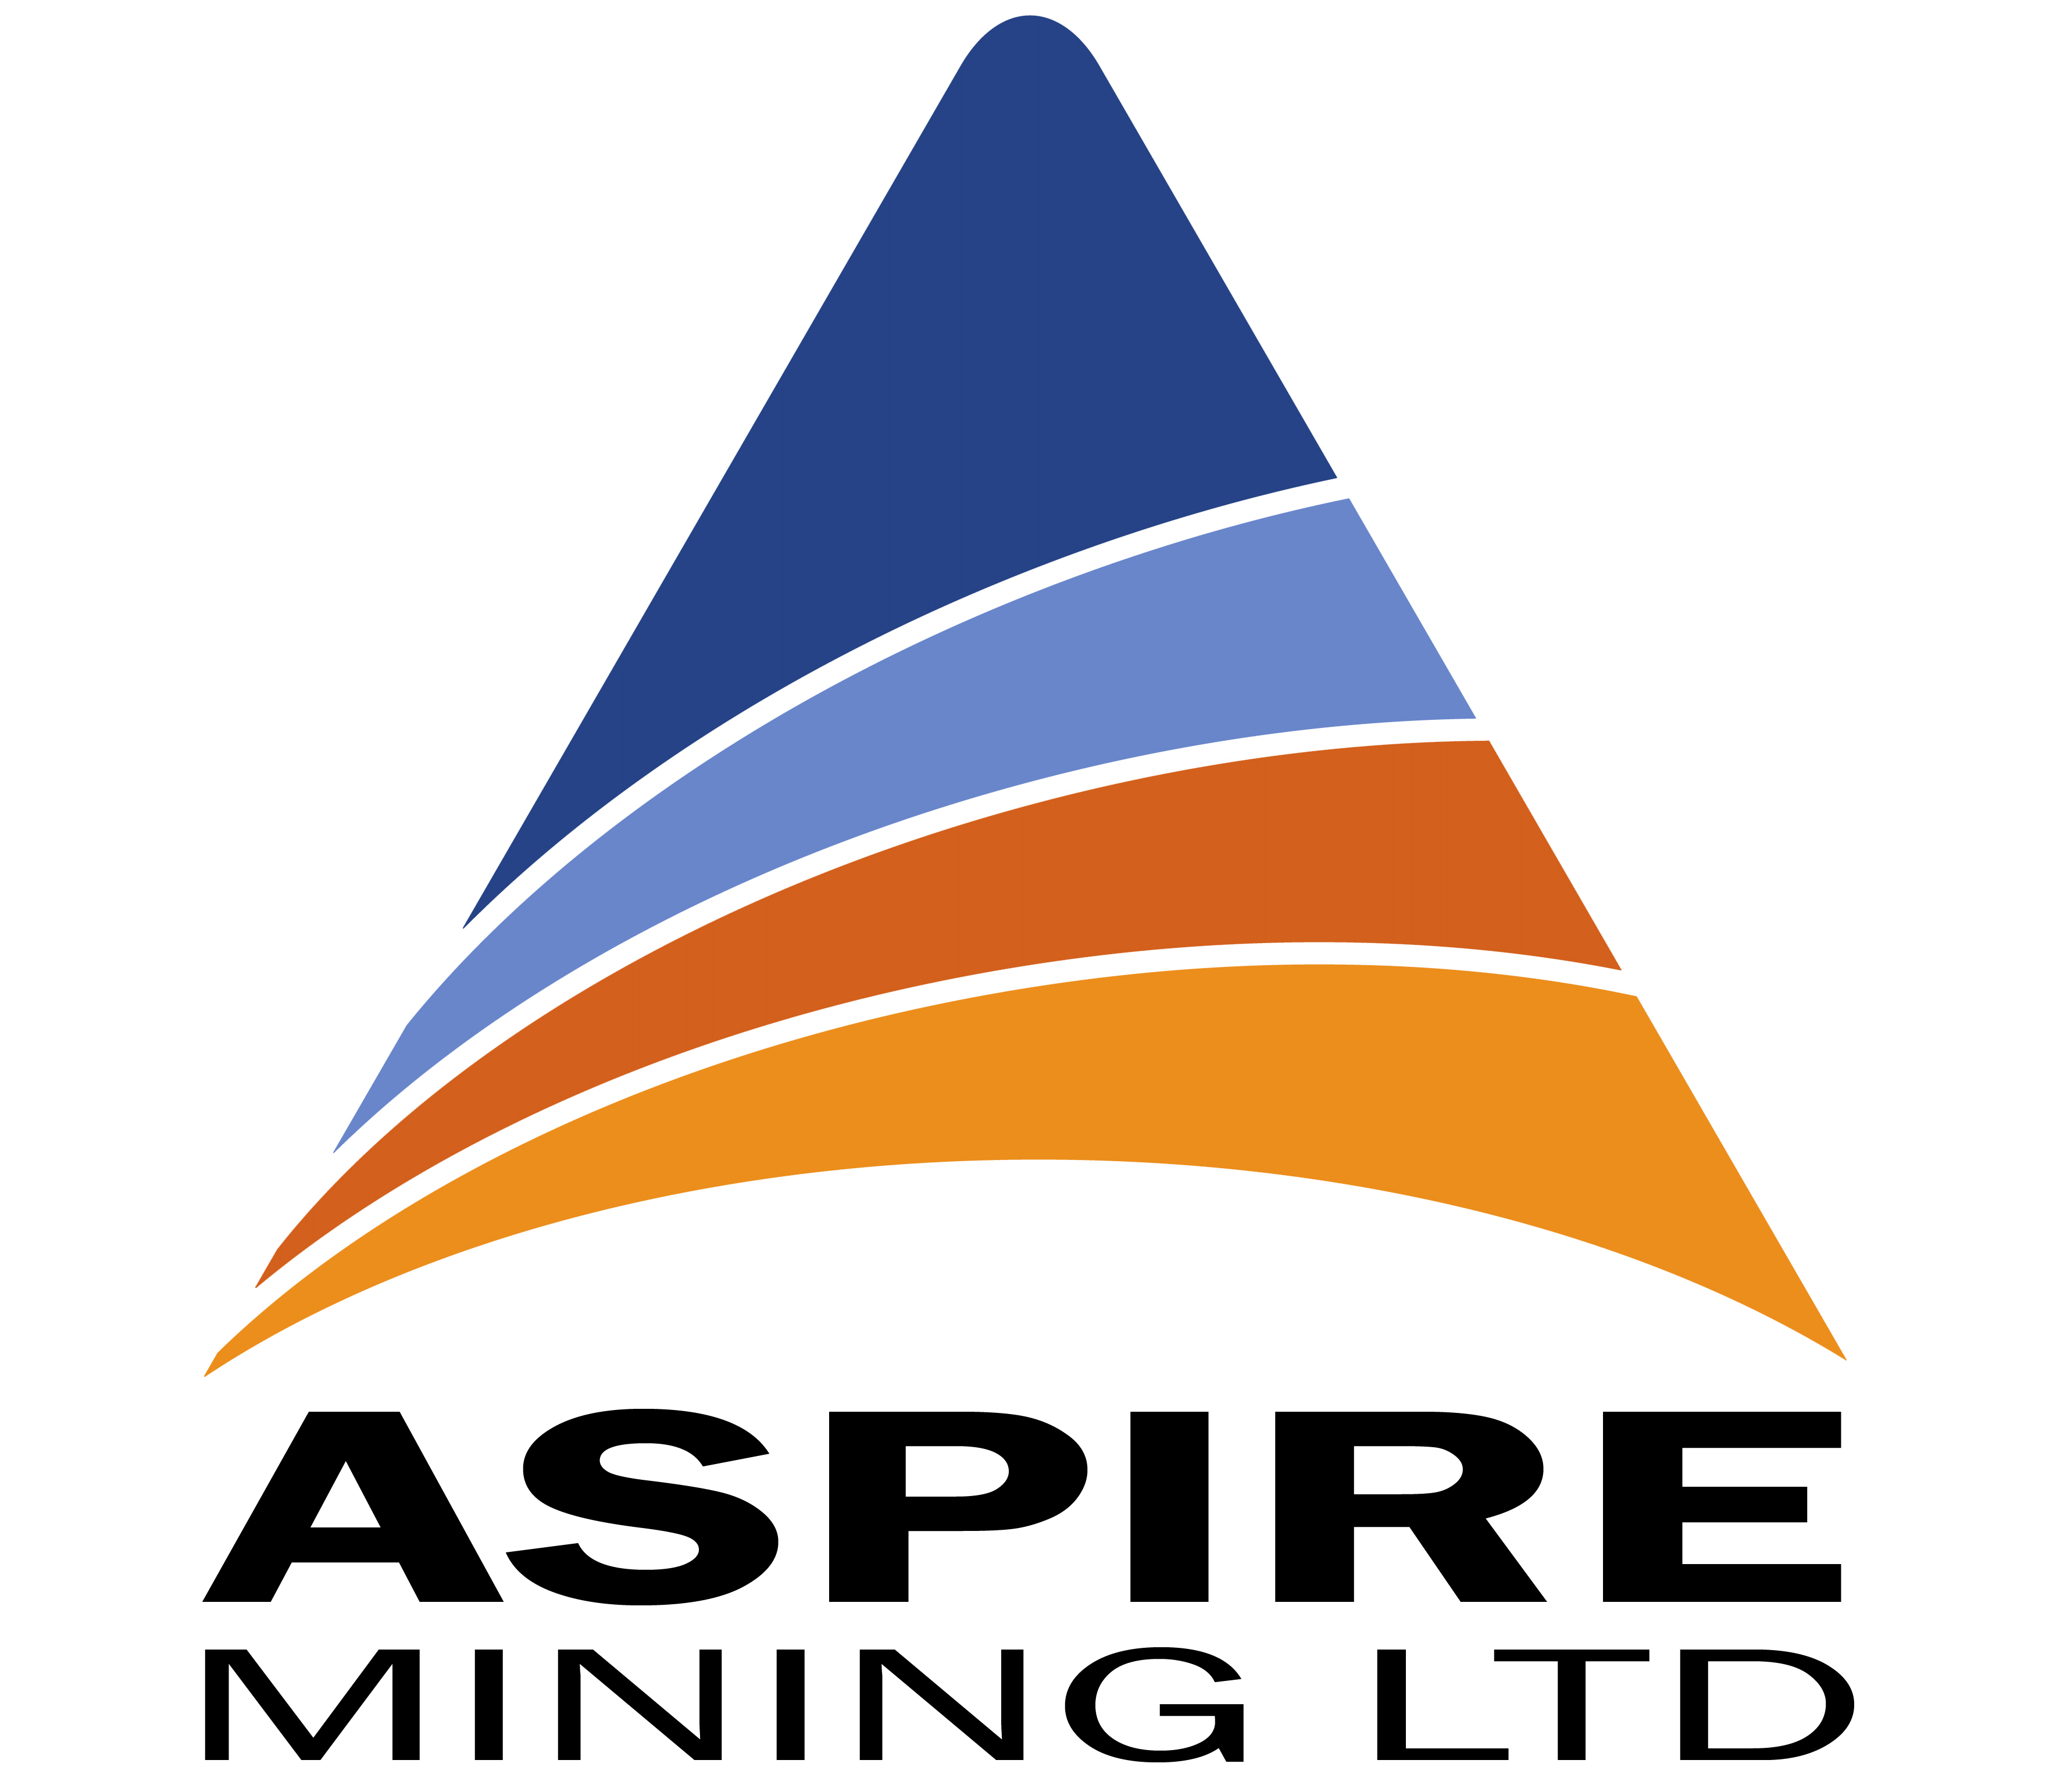 ASPIRE MINING LTD